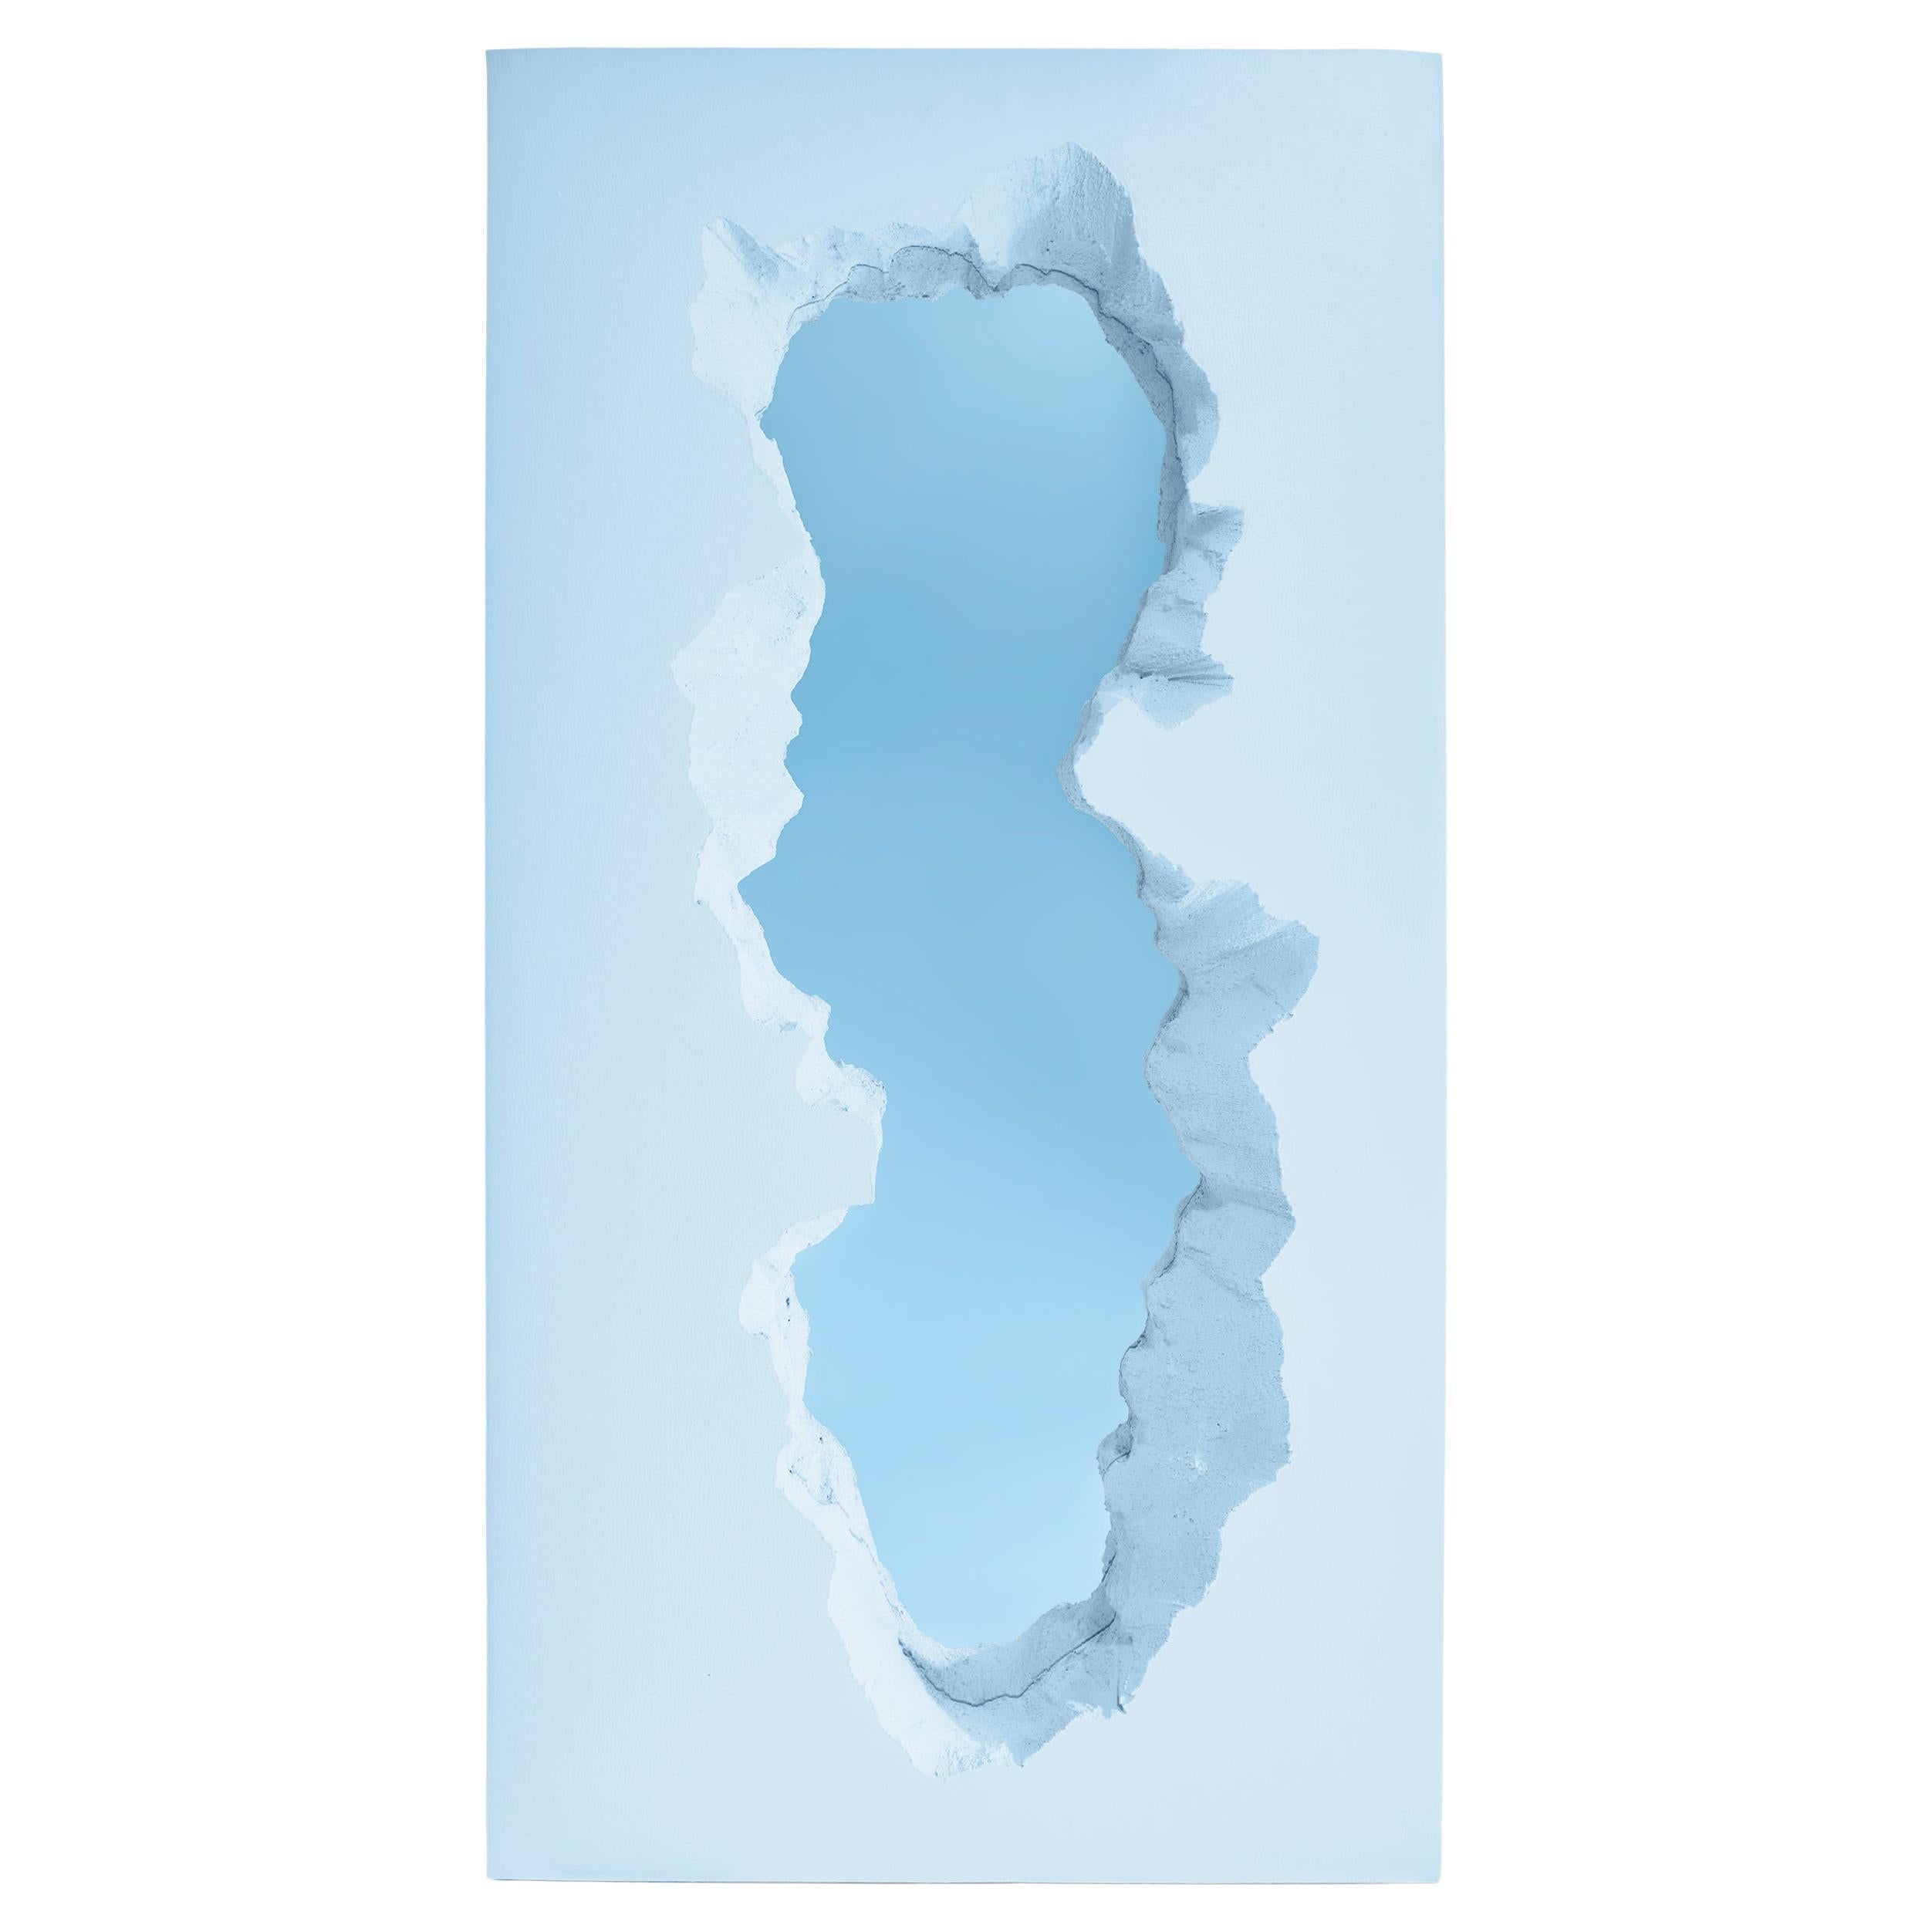 Gufram Broken Mirror by Snarkitecture - Blue edition 1/33